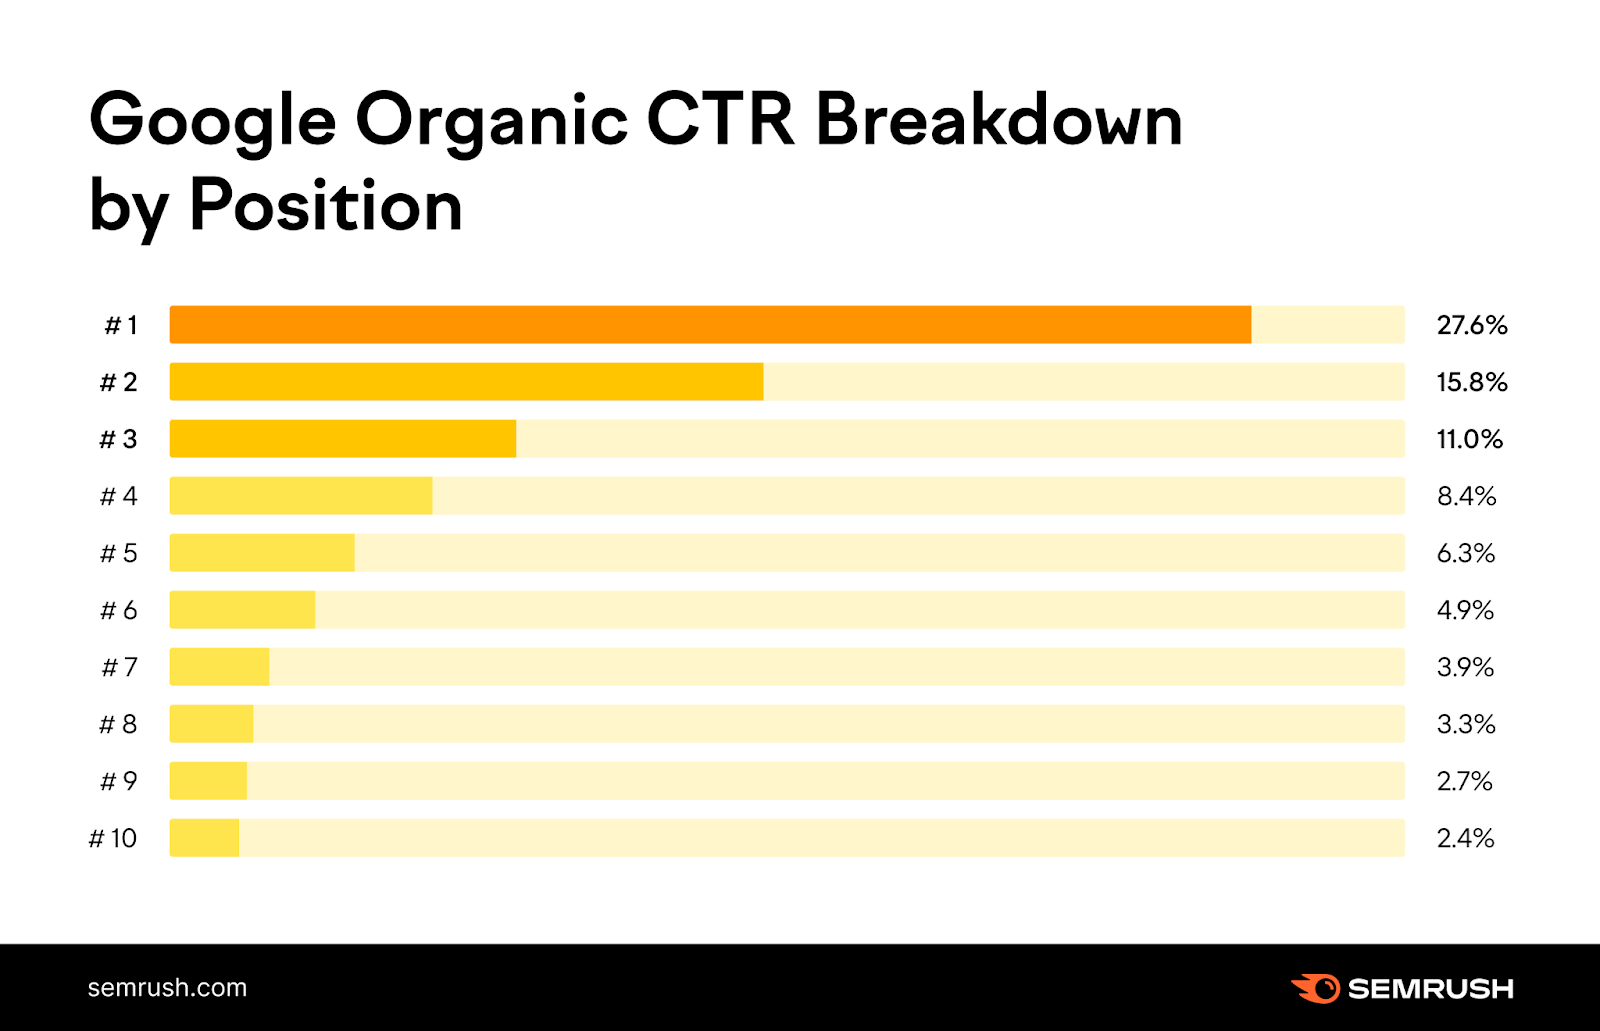 Une infographie de Semrush montrant la répartition du CTR organique de Google par position